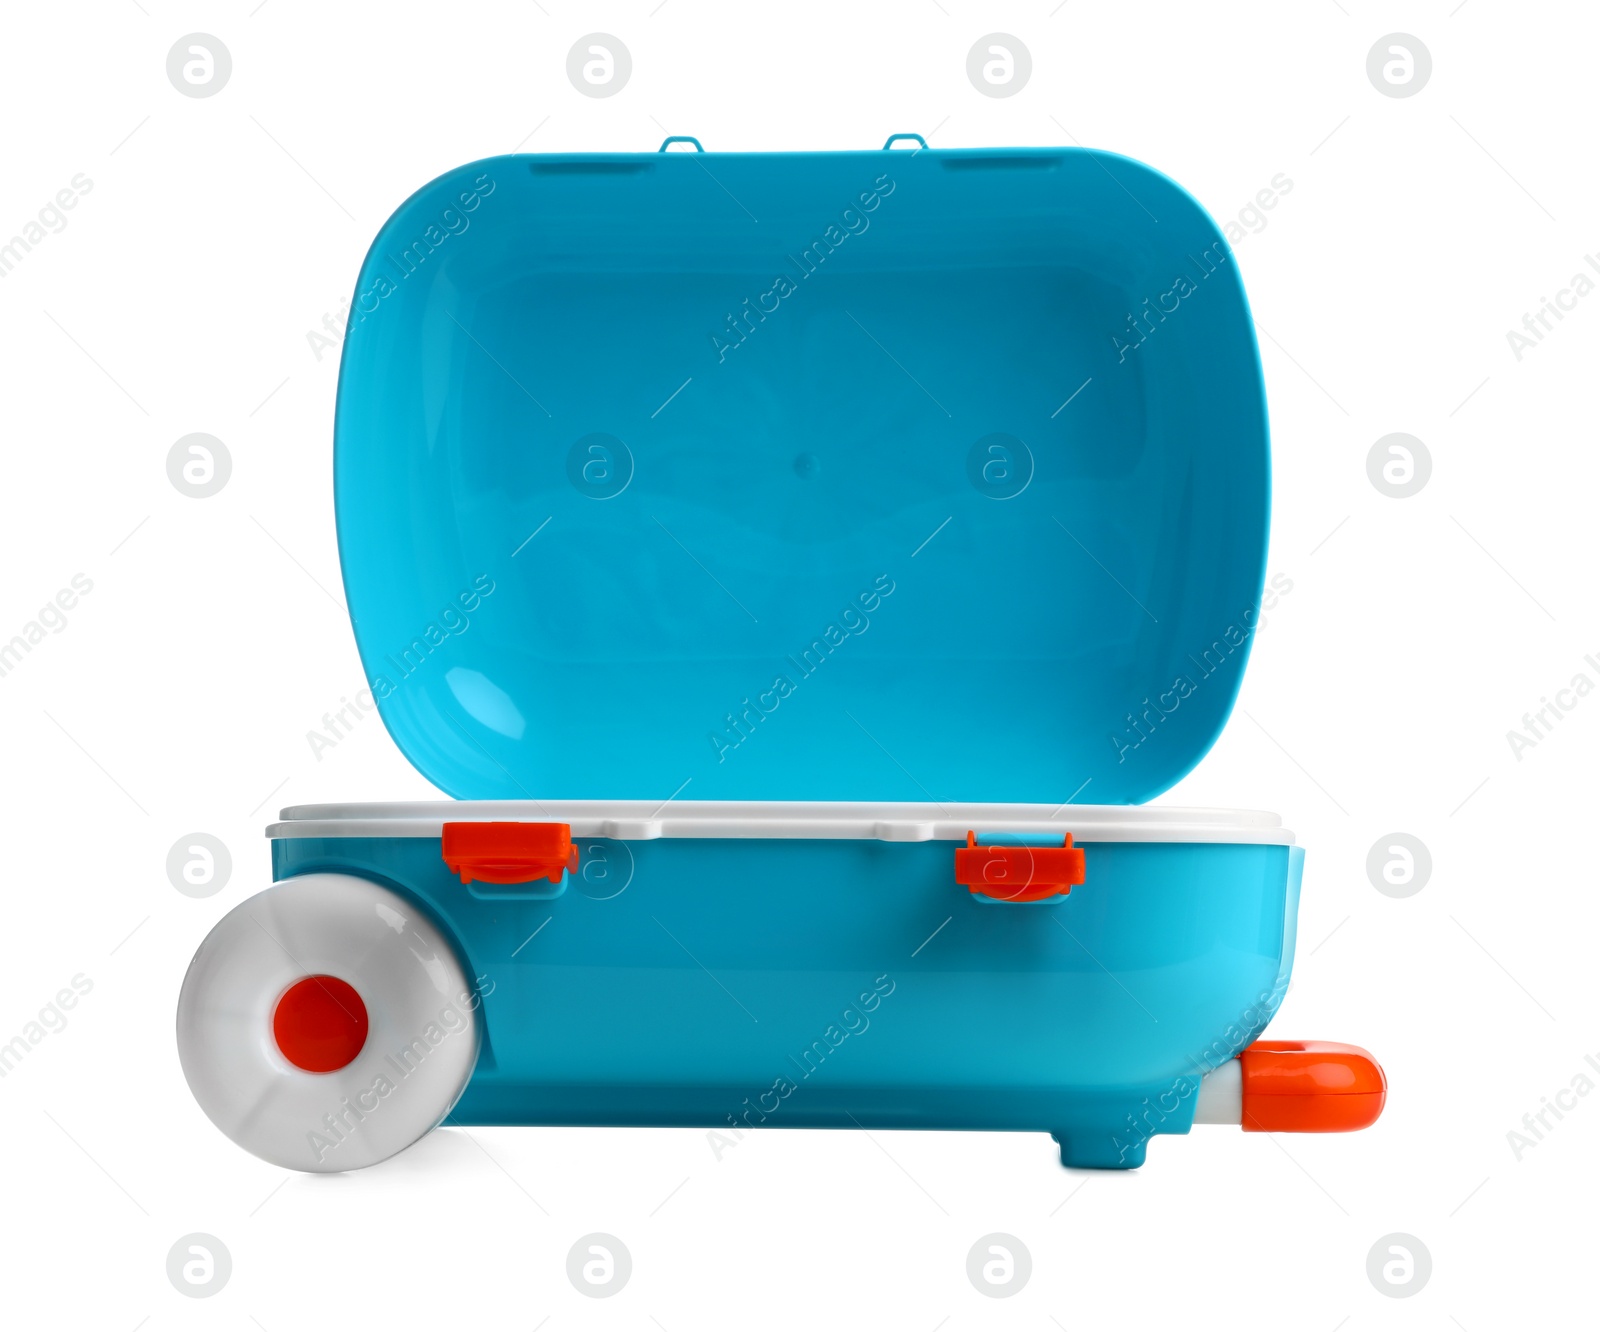 Photo of Stylish little blue suitcase on white background